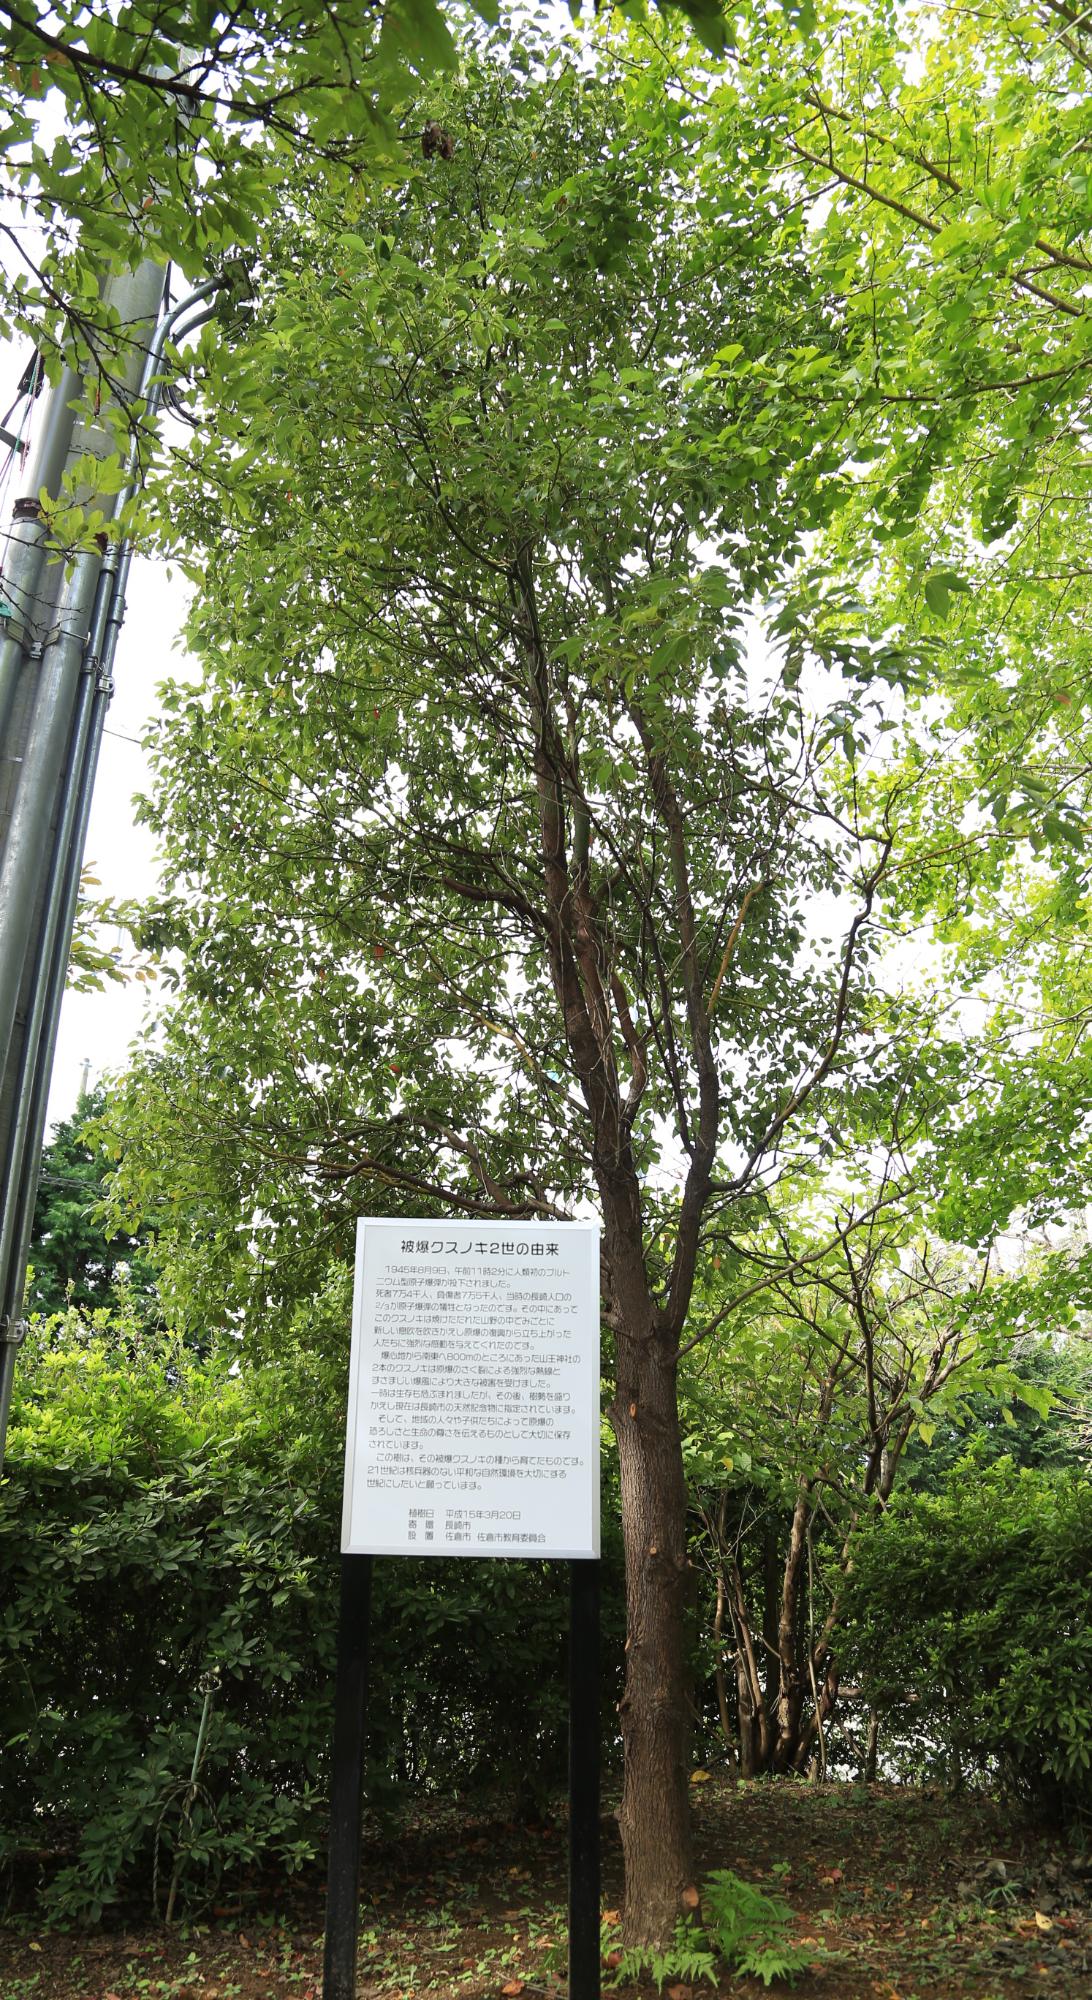 樹の傍にある立て札に由来についての説明が記載されてある被曝クスノキ2世の写真